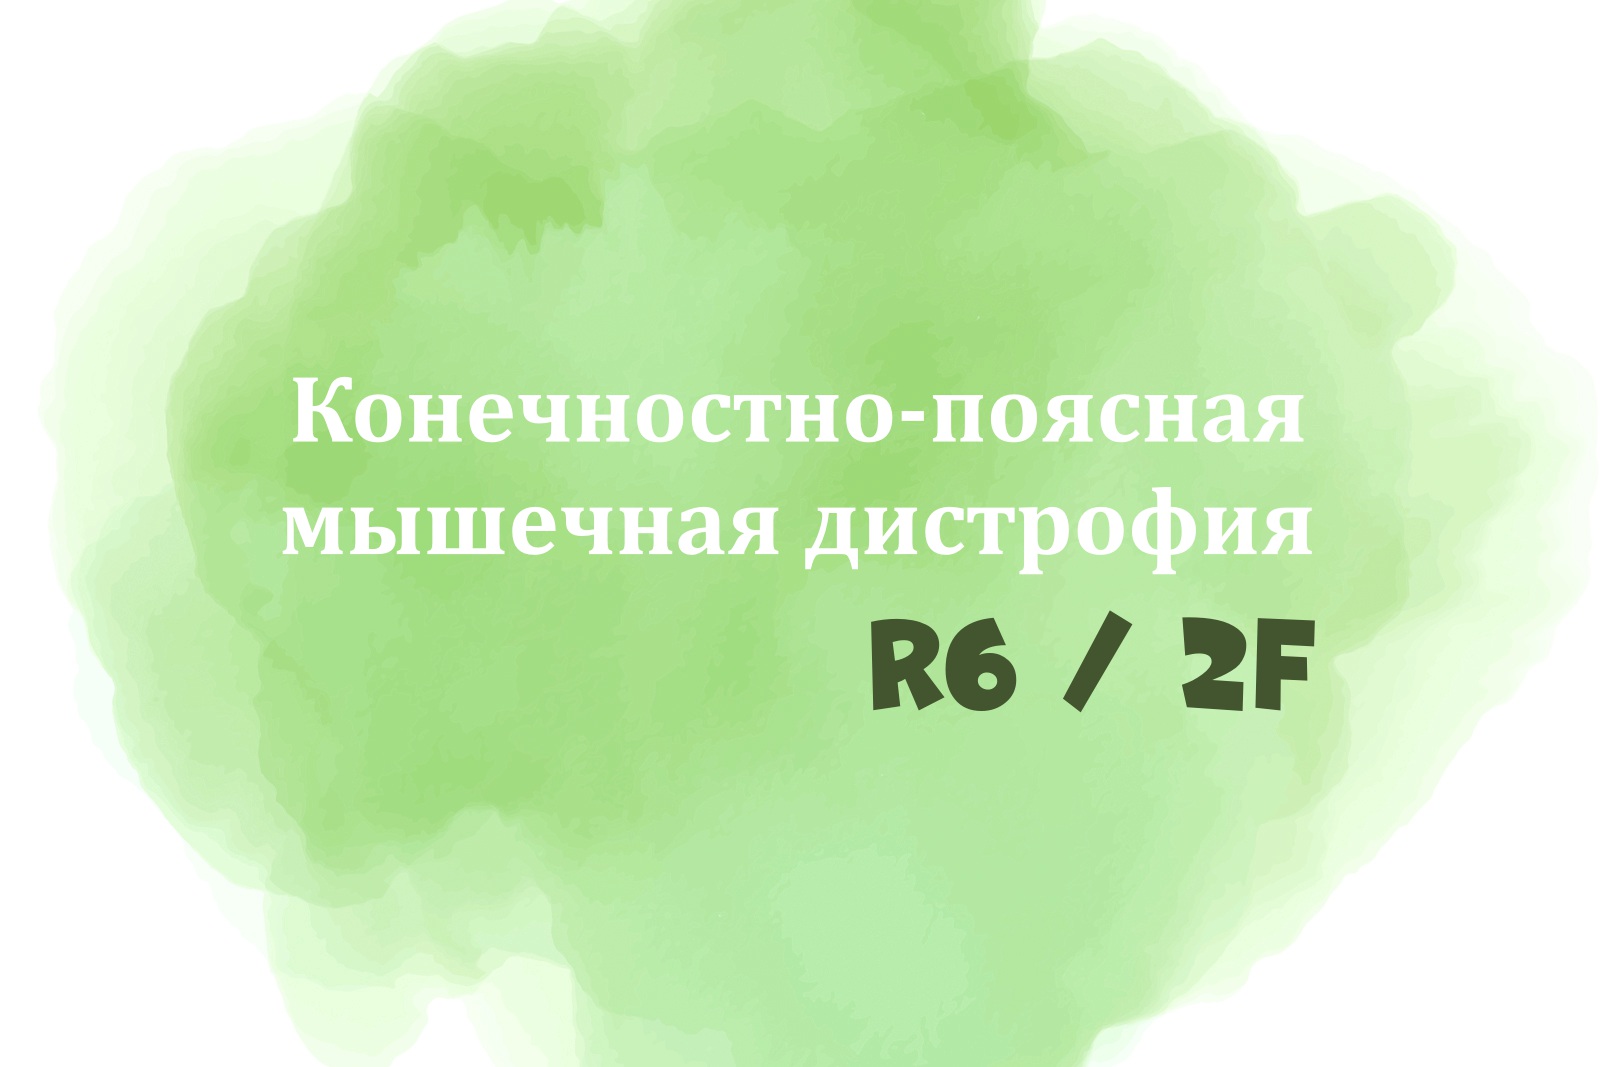 На акварельном зелёном пятне надпись "Конечностно-поясная мышечная дистрофия R6/2F"